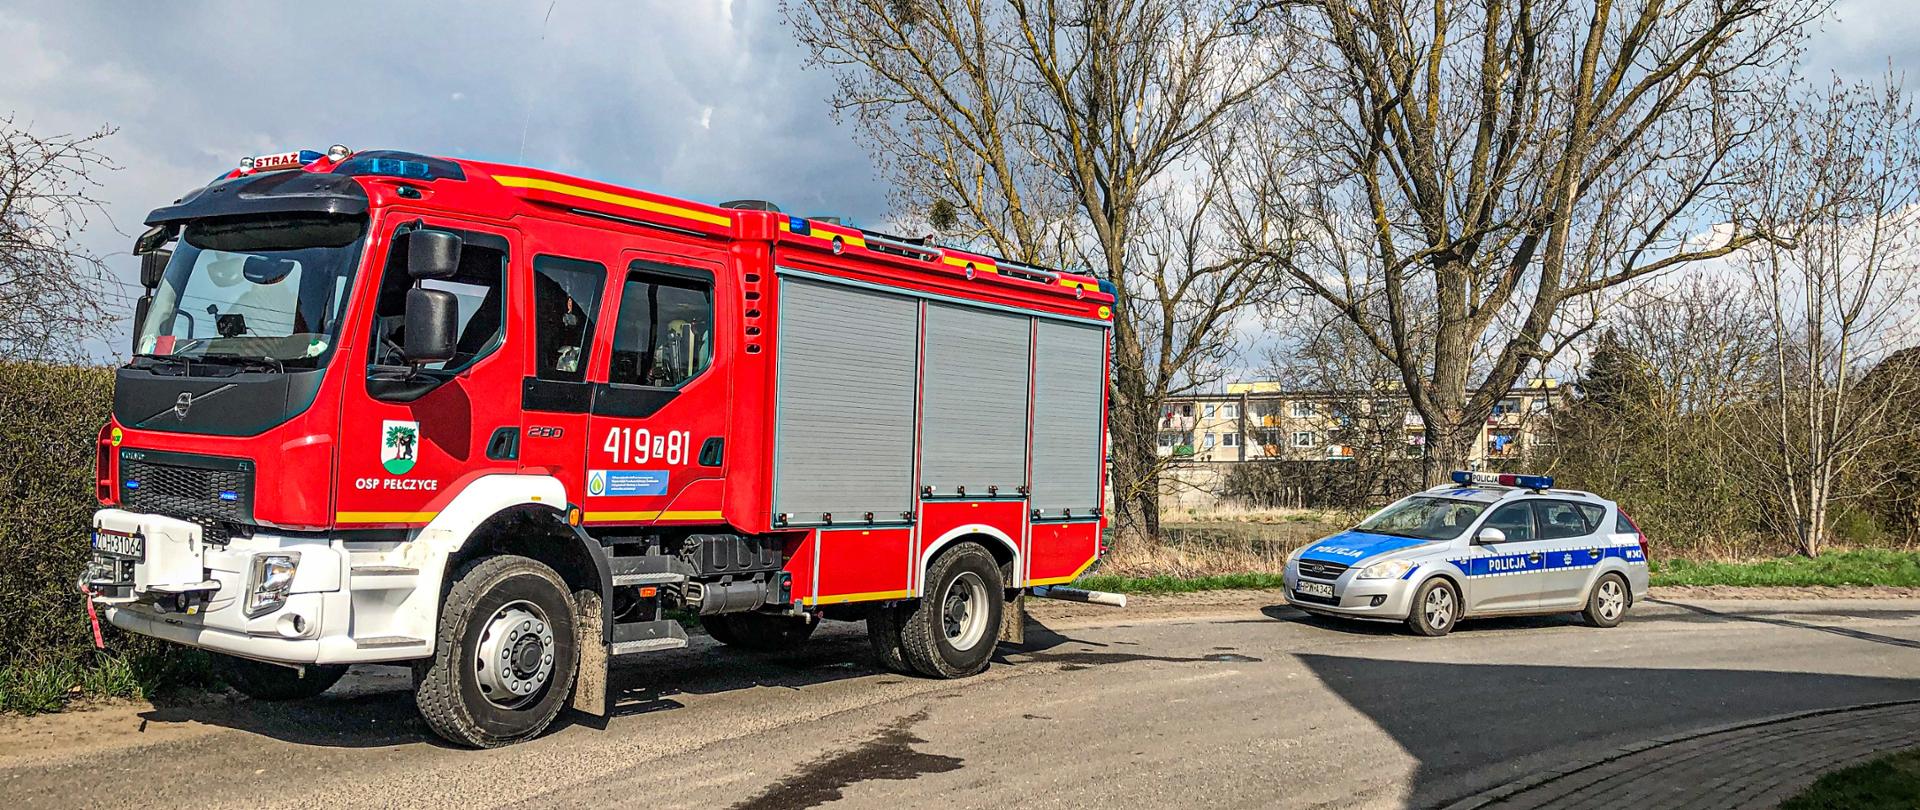 Na drodze znajduje się wóz strażacki OSP Pełczyce, a za nim stoi radiowóz. W oddali znajdują się drzewa oraz blok mieszkalny. Zdjęcie wykonano w porze dziennej.